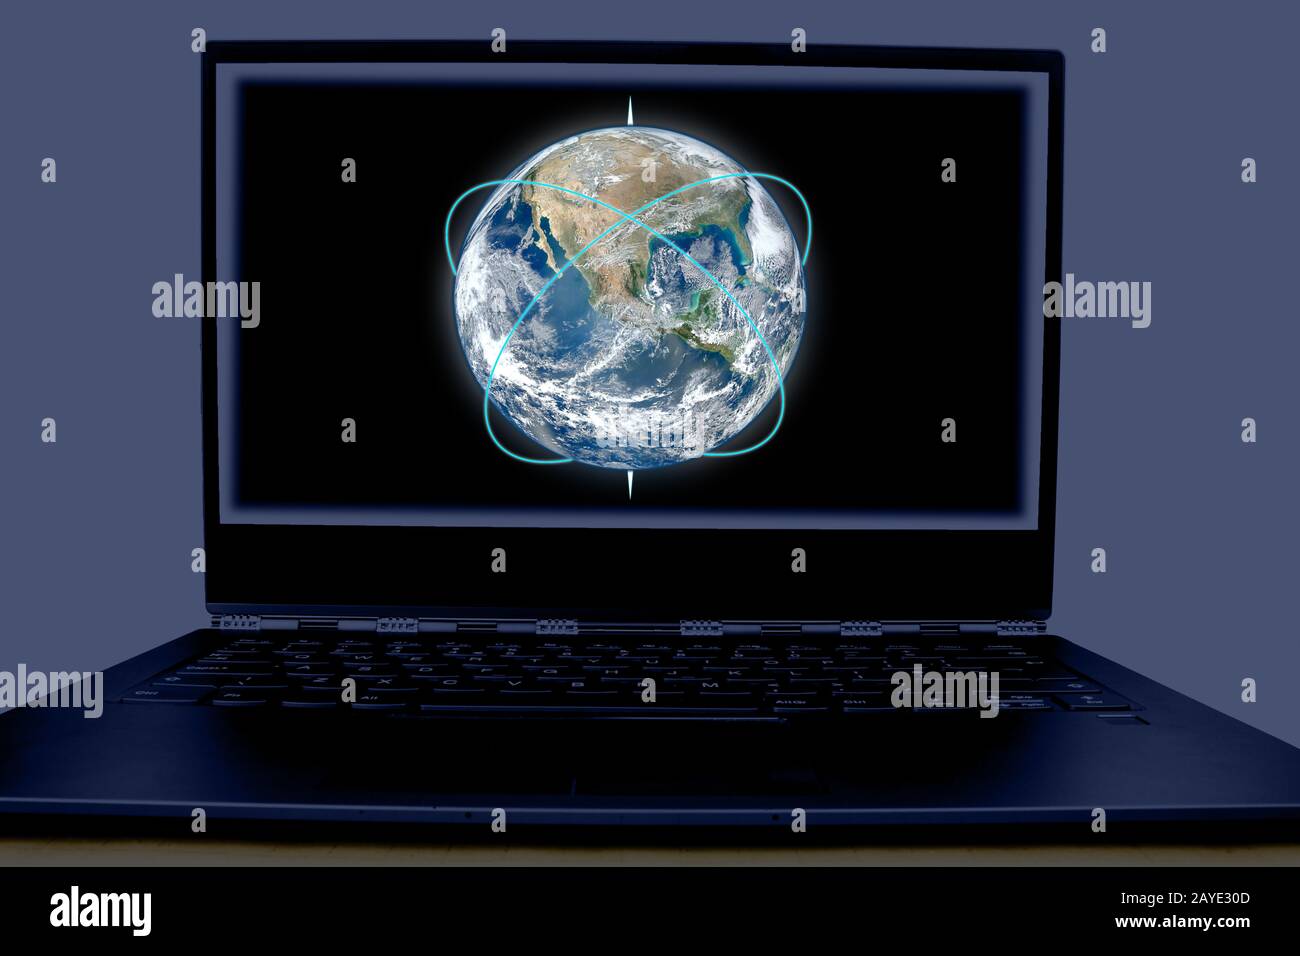 Foto des Netzwerksystems in modernen, intelligenten Geräten. Das Symbol für das Bildsymbol in der Abbildung zeigt das schematische Netzwerk telecomm Stockfoto